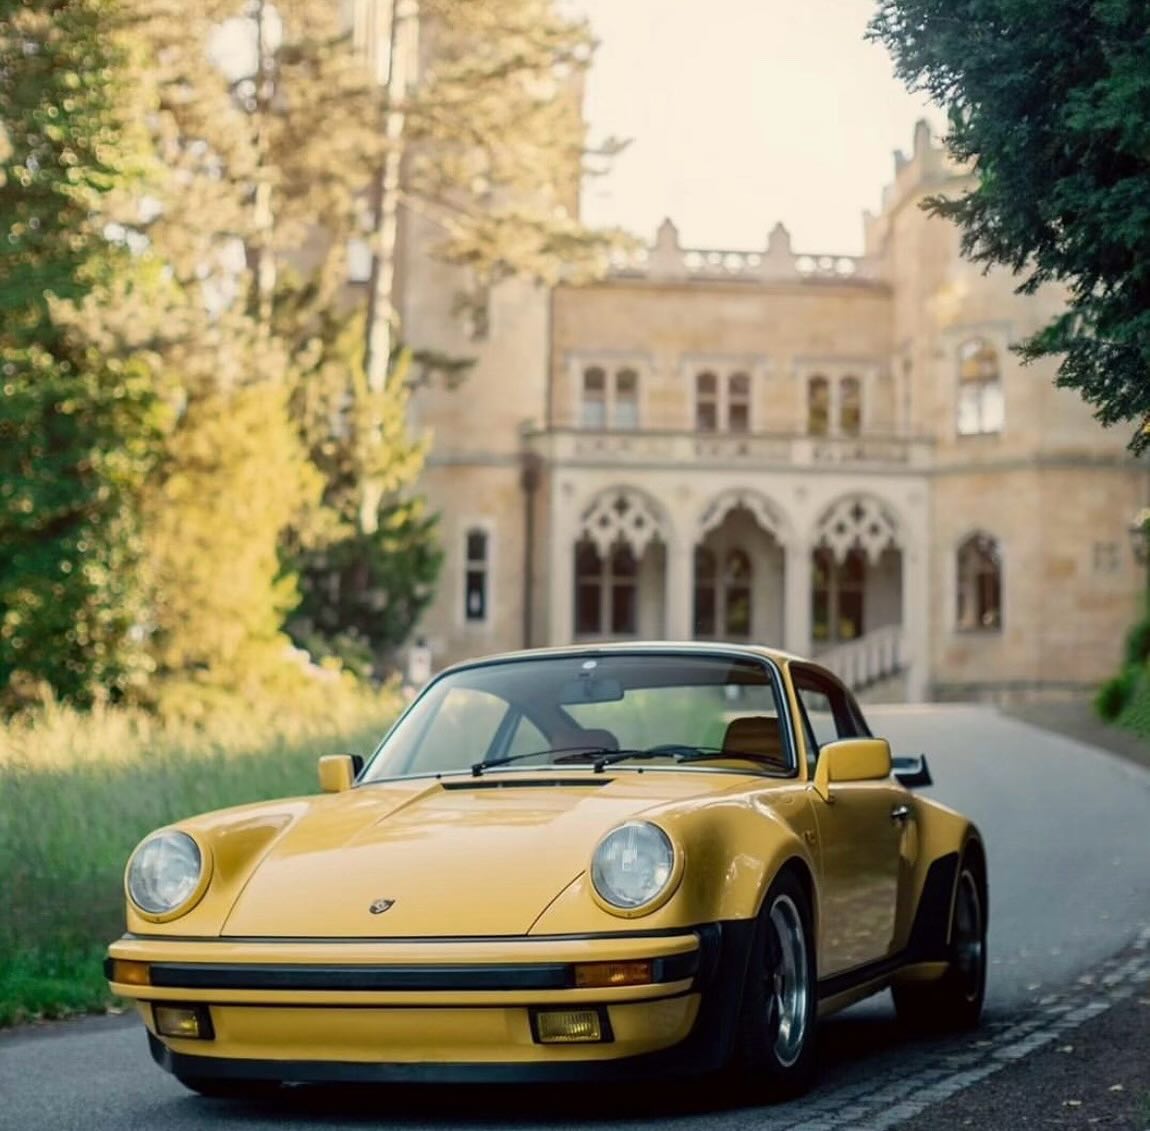 Porsche 930 Turbo, one of our favorite silhouettes 
Pictures by @renntrieb
#porsche #porsche911 #porscheclassic #porschemoment #porschelove #porschelife #classicporsche #vintageporsche #aircooled #aircooledporsche #luftgekühlt #classiccars #vintagecar #porsche930 #930turbo